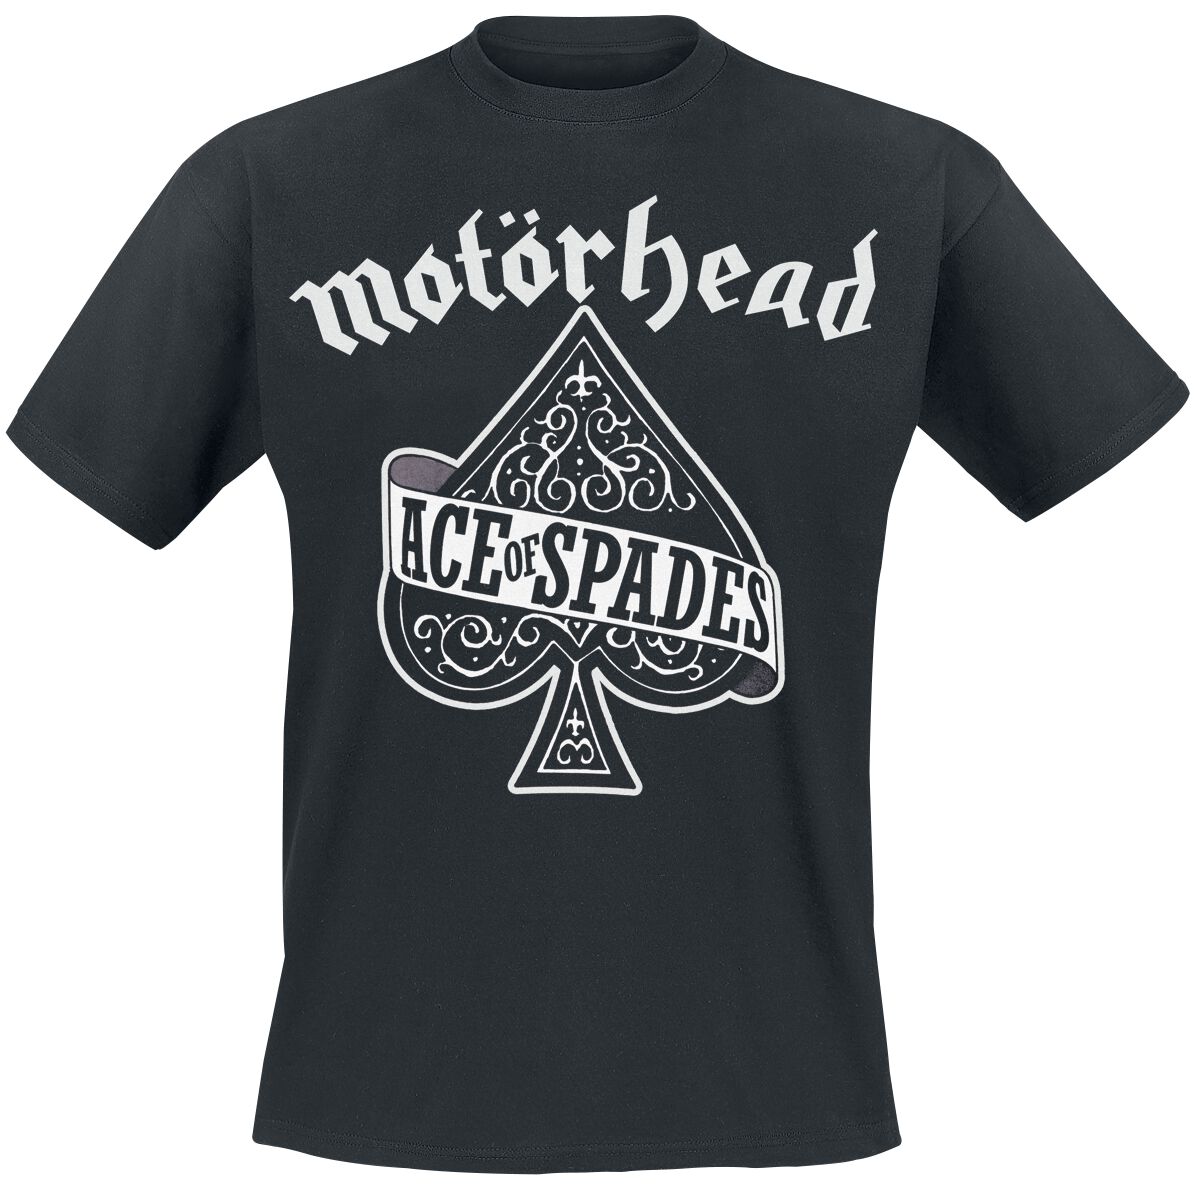 Motörhead T-Shirt - Ace Of Spades - XS bis M - für Männer - Größe XS - schwarz  - Lizenziertes Merchandise!